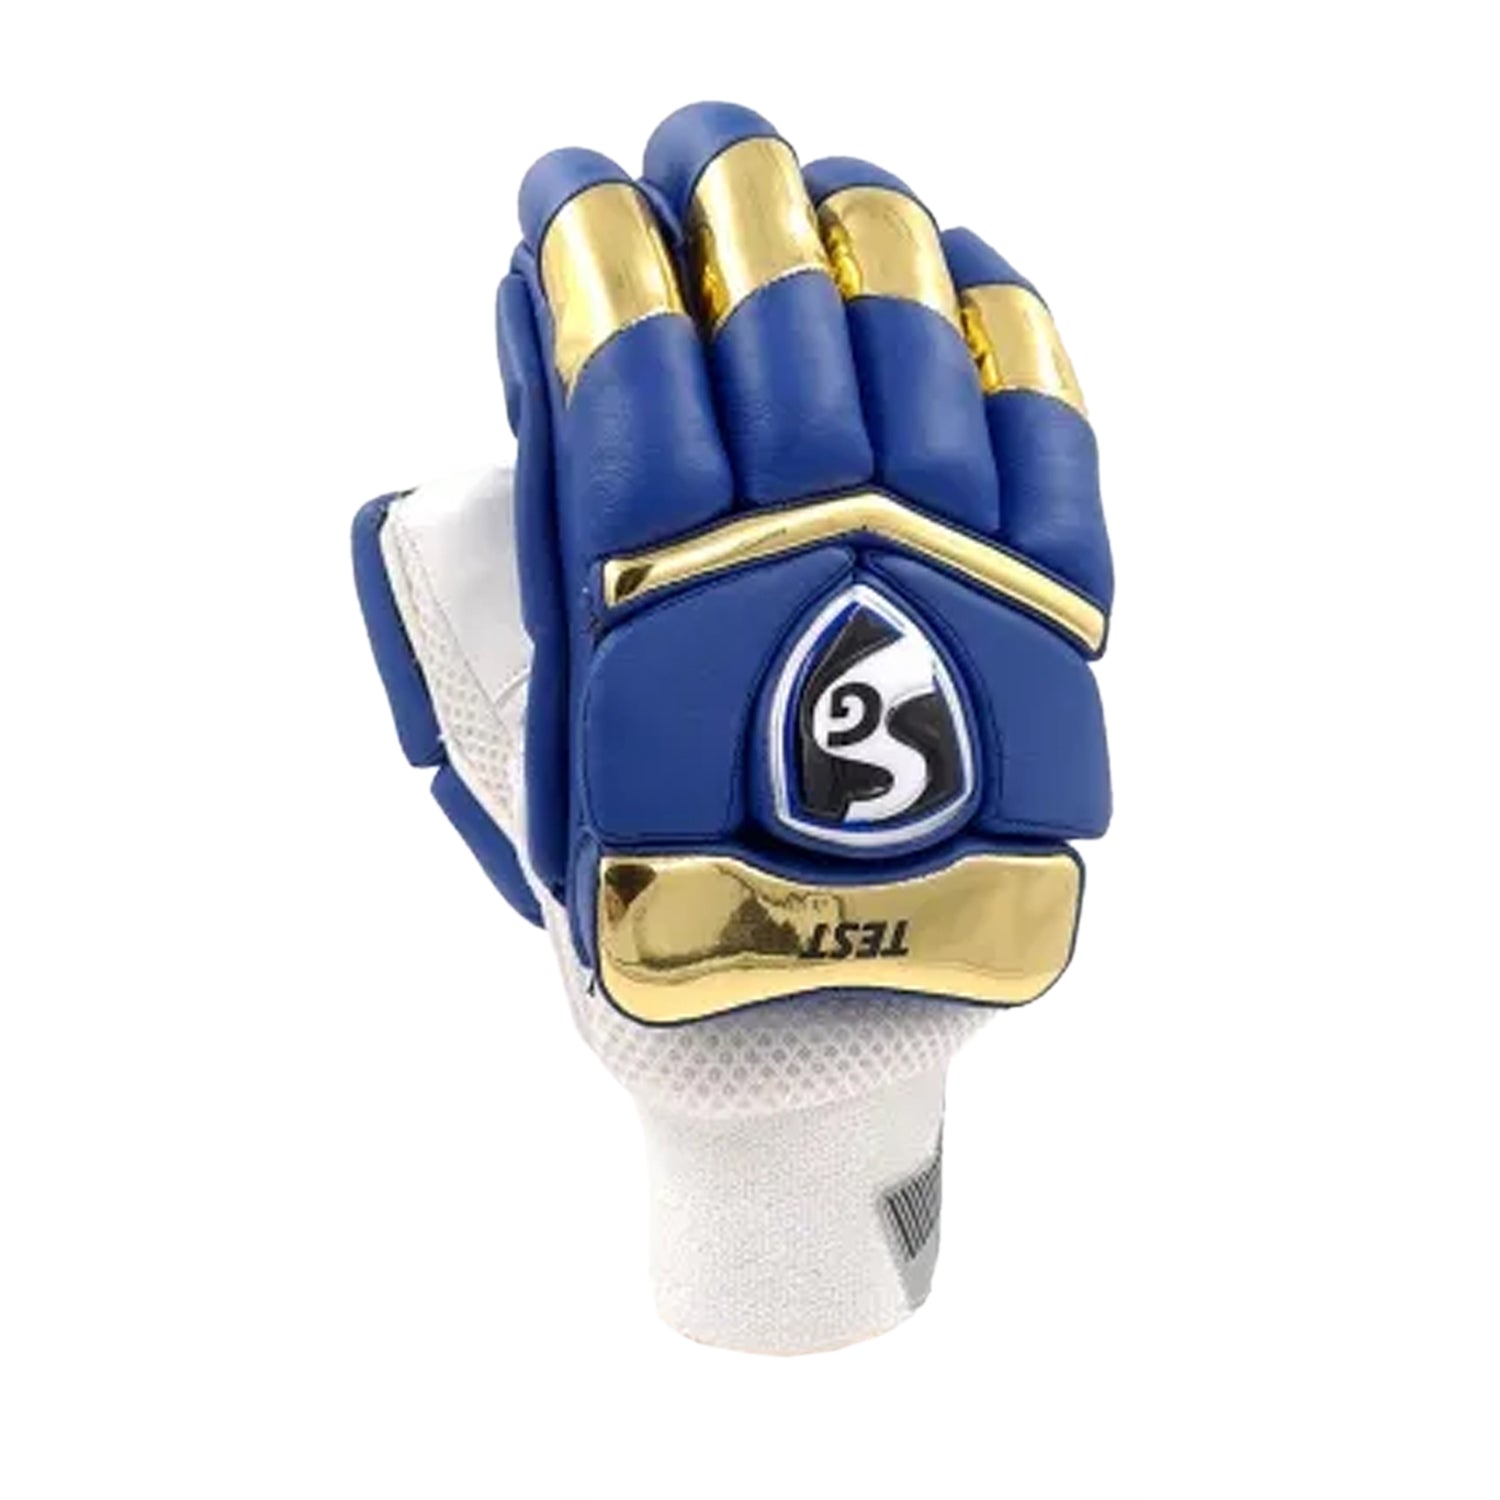 SG Test MI Batting Gloves - Left Hand, Navy/Gold - Best Price online Prokicksports.com